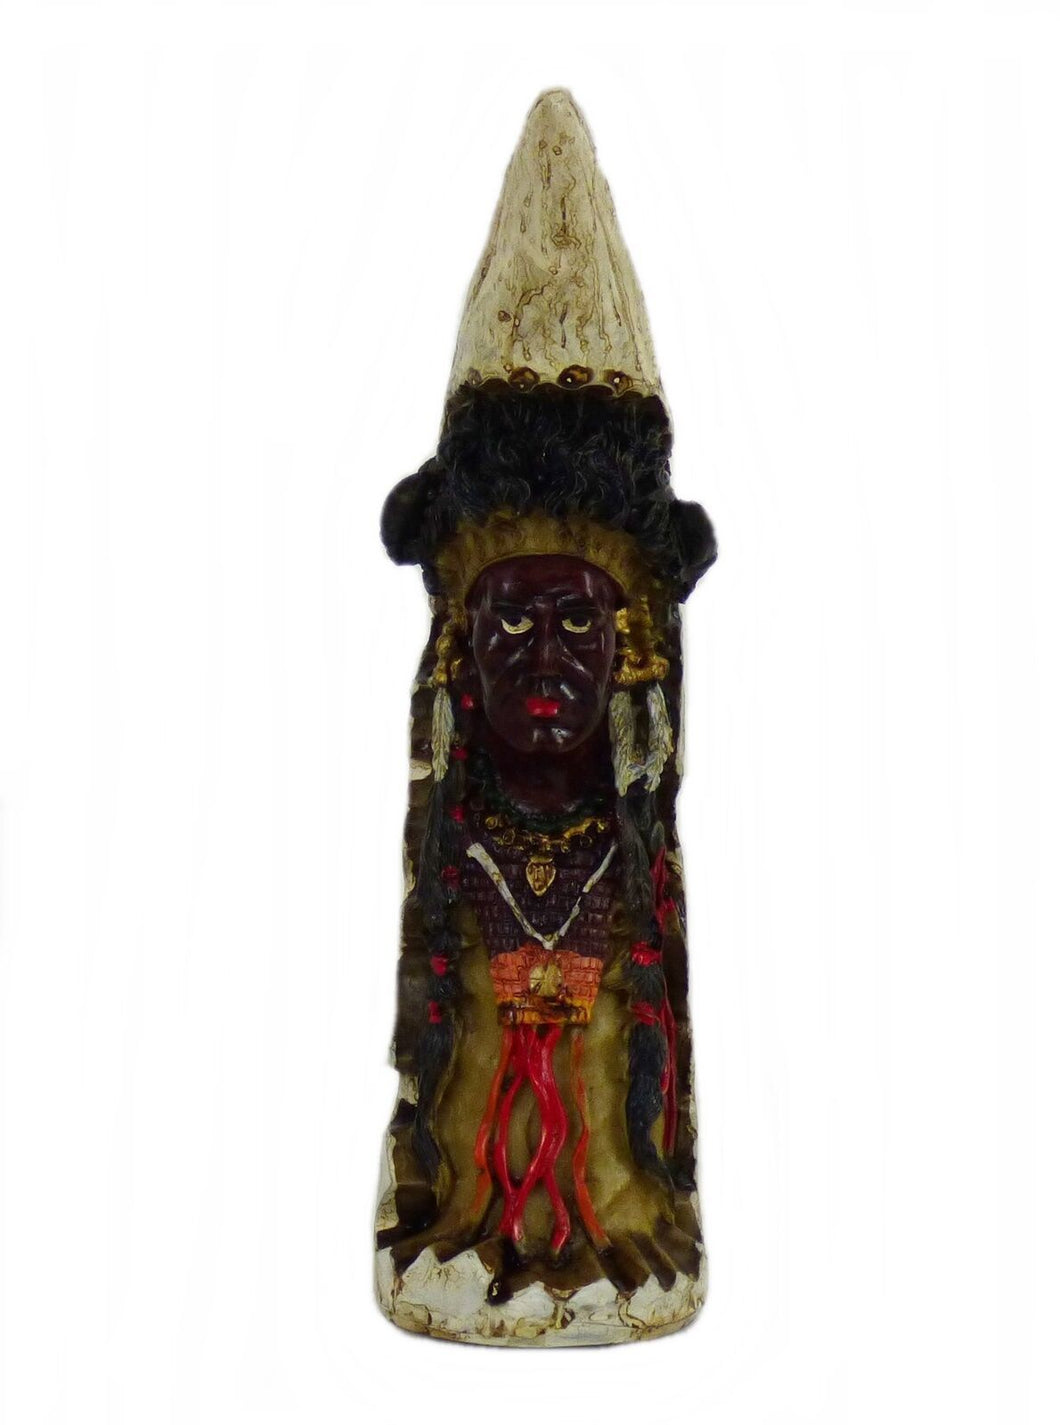 Indianer Figur Kanu Einbaum Westerndekoration Western 4 Variationen ca. 17cm